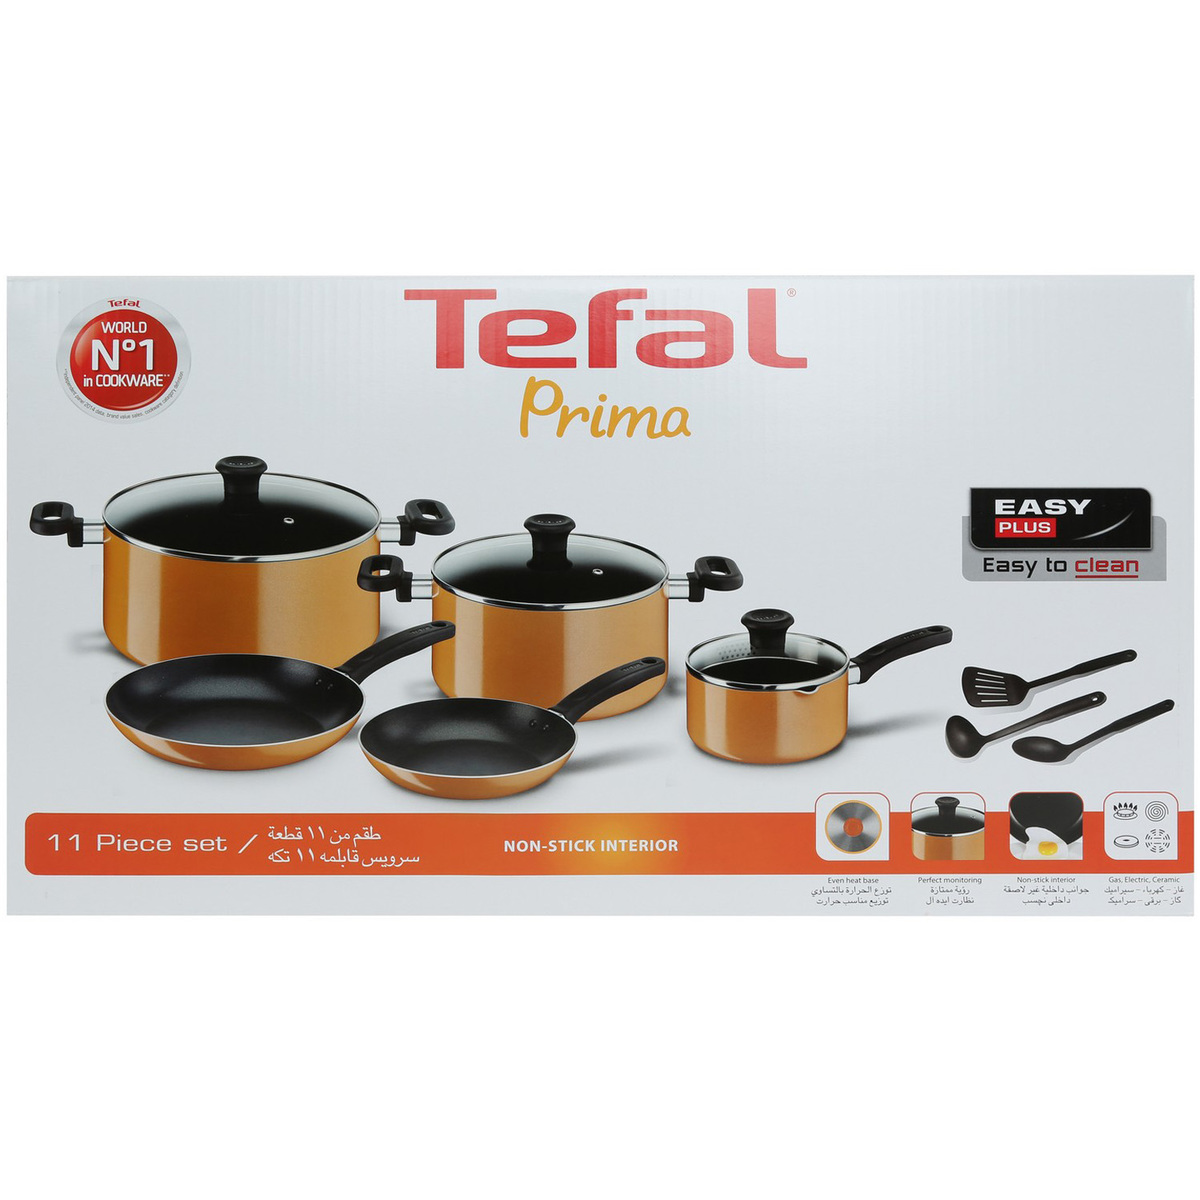 Tefal Prima Cookware Set 11pcs